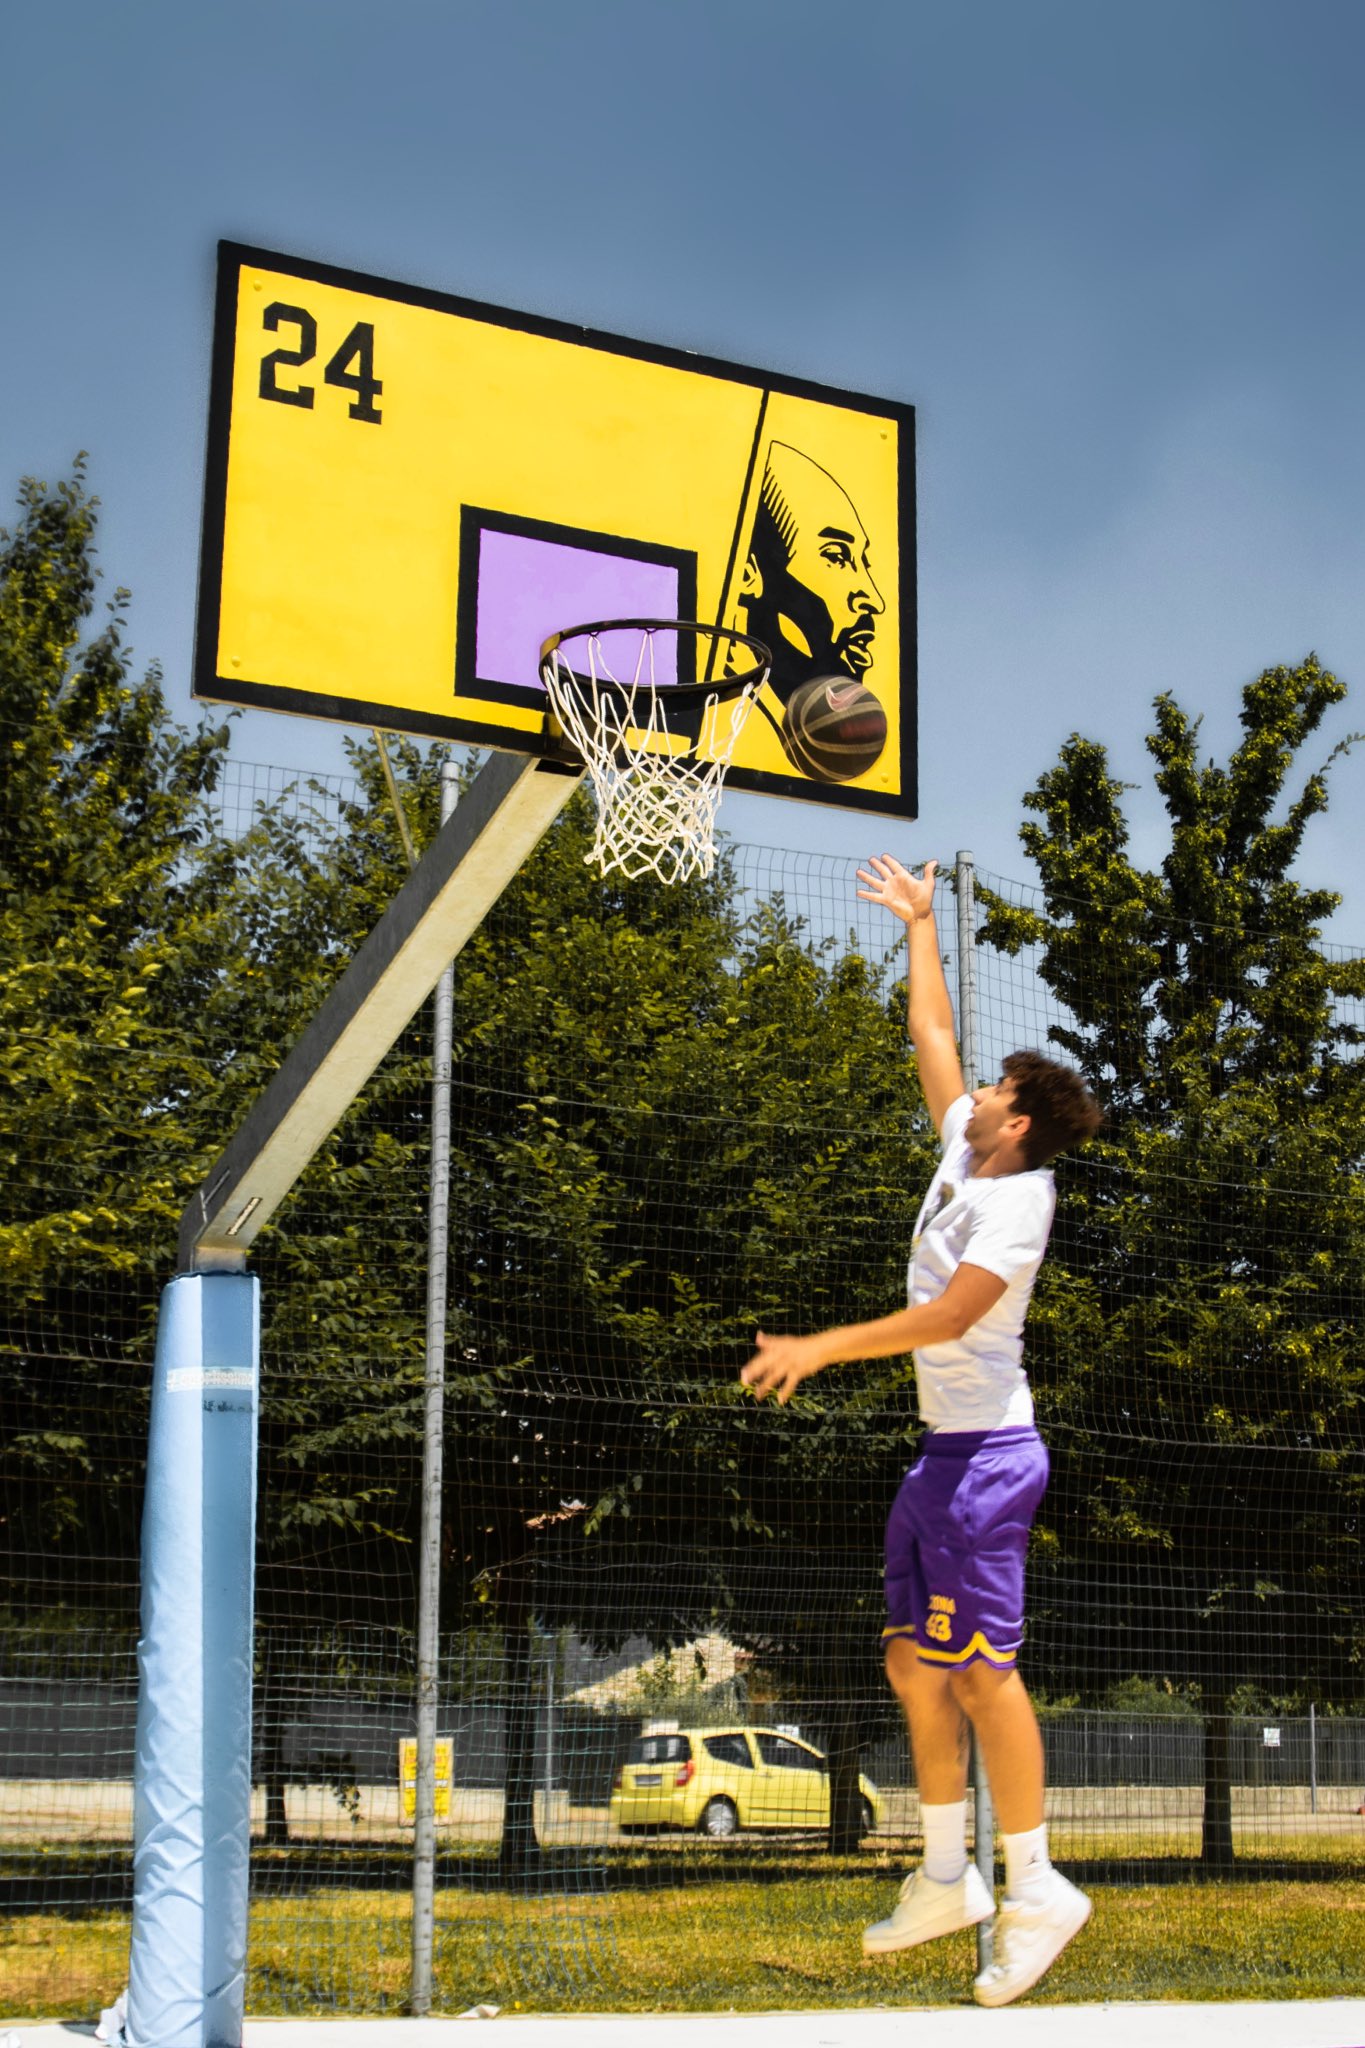 basketball board design